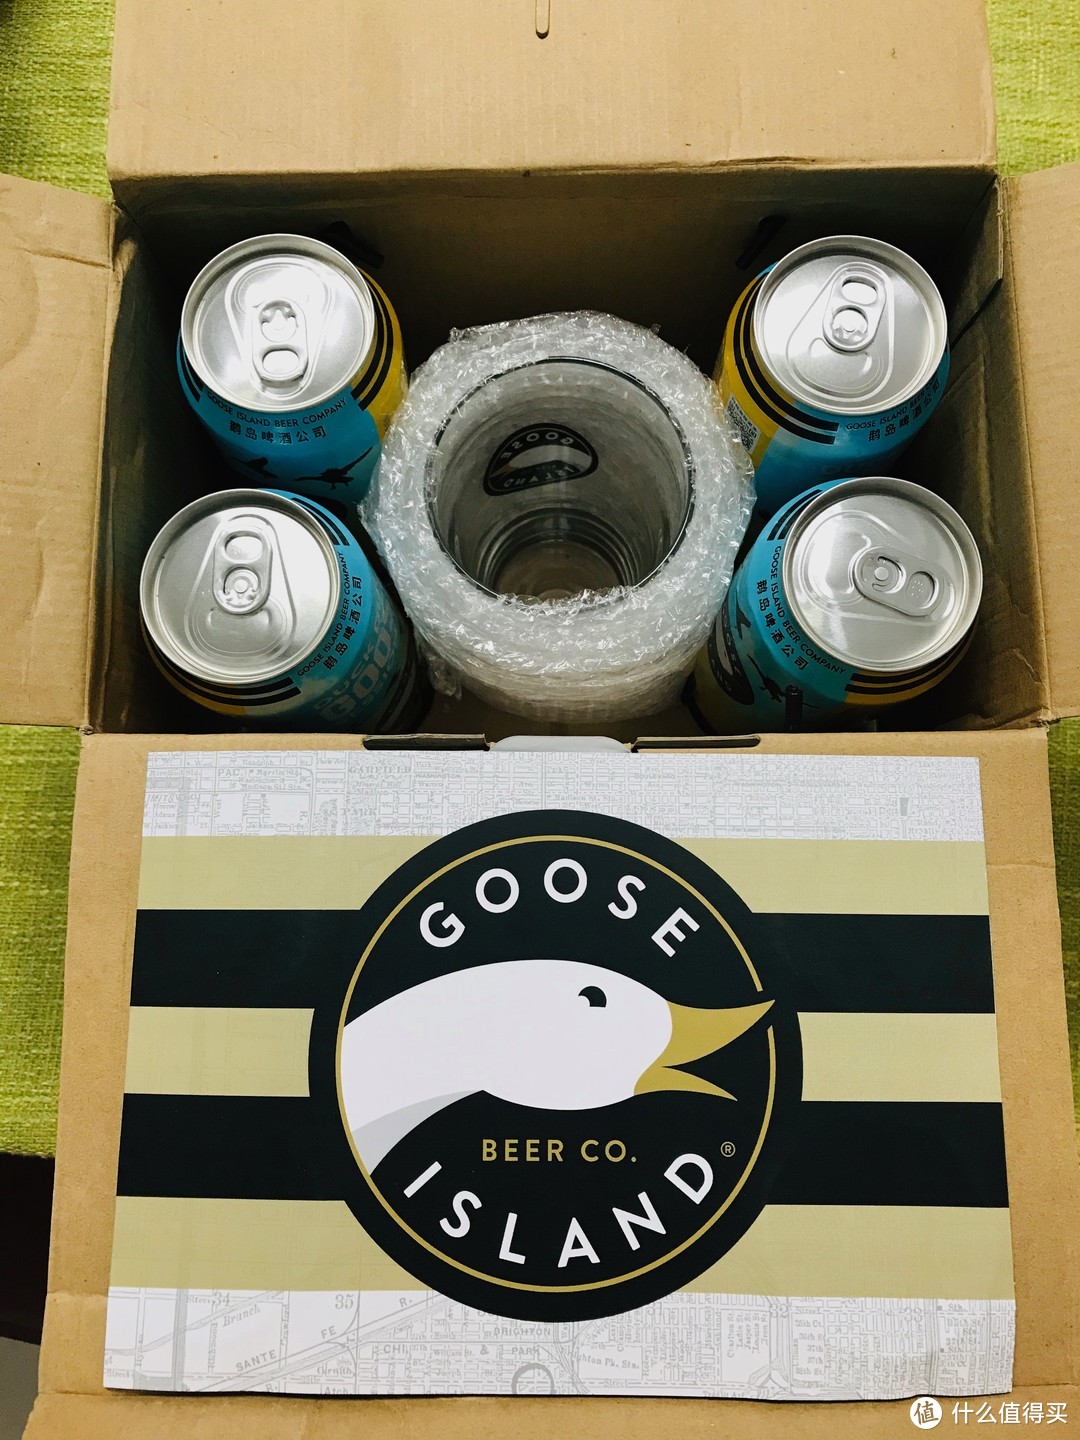 鹅鹅鹅、鹅岛IPA啤酒品尝分享